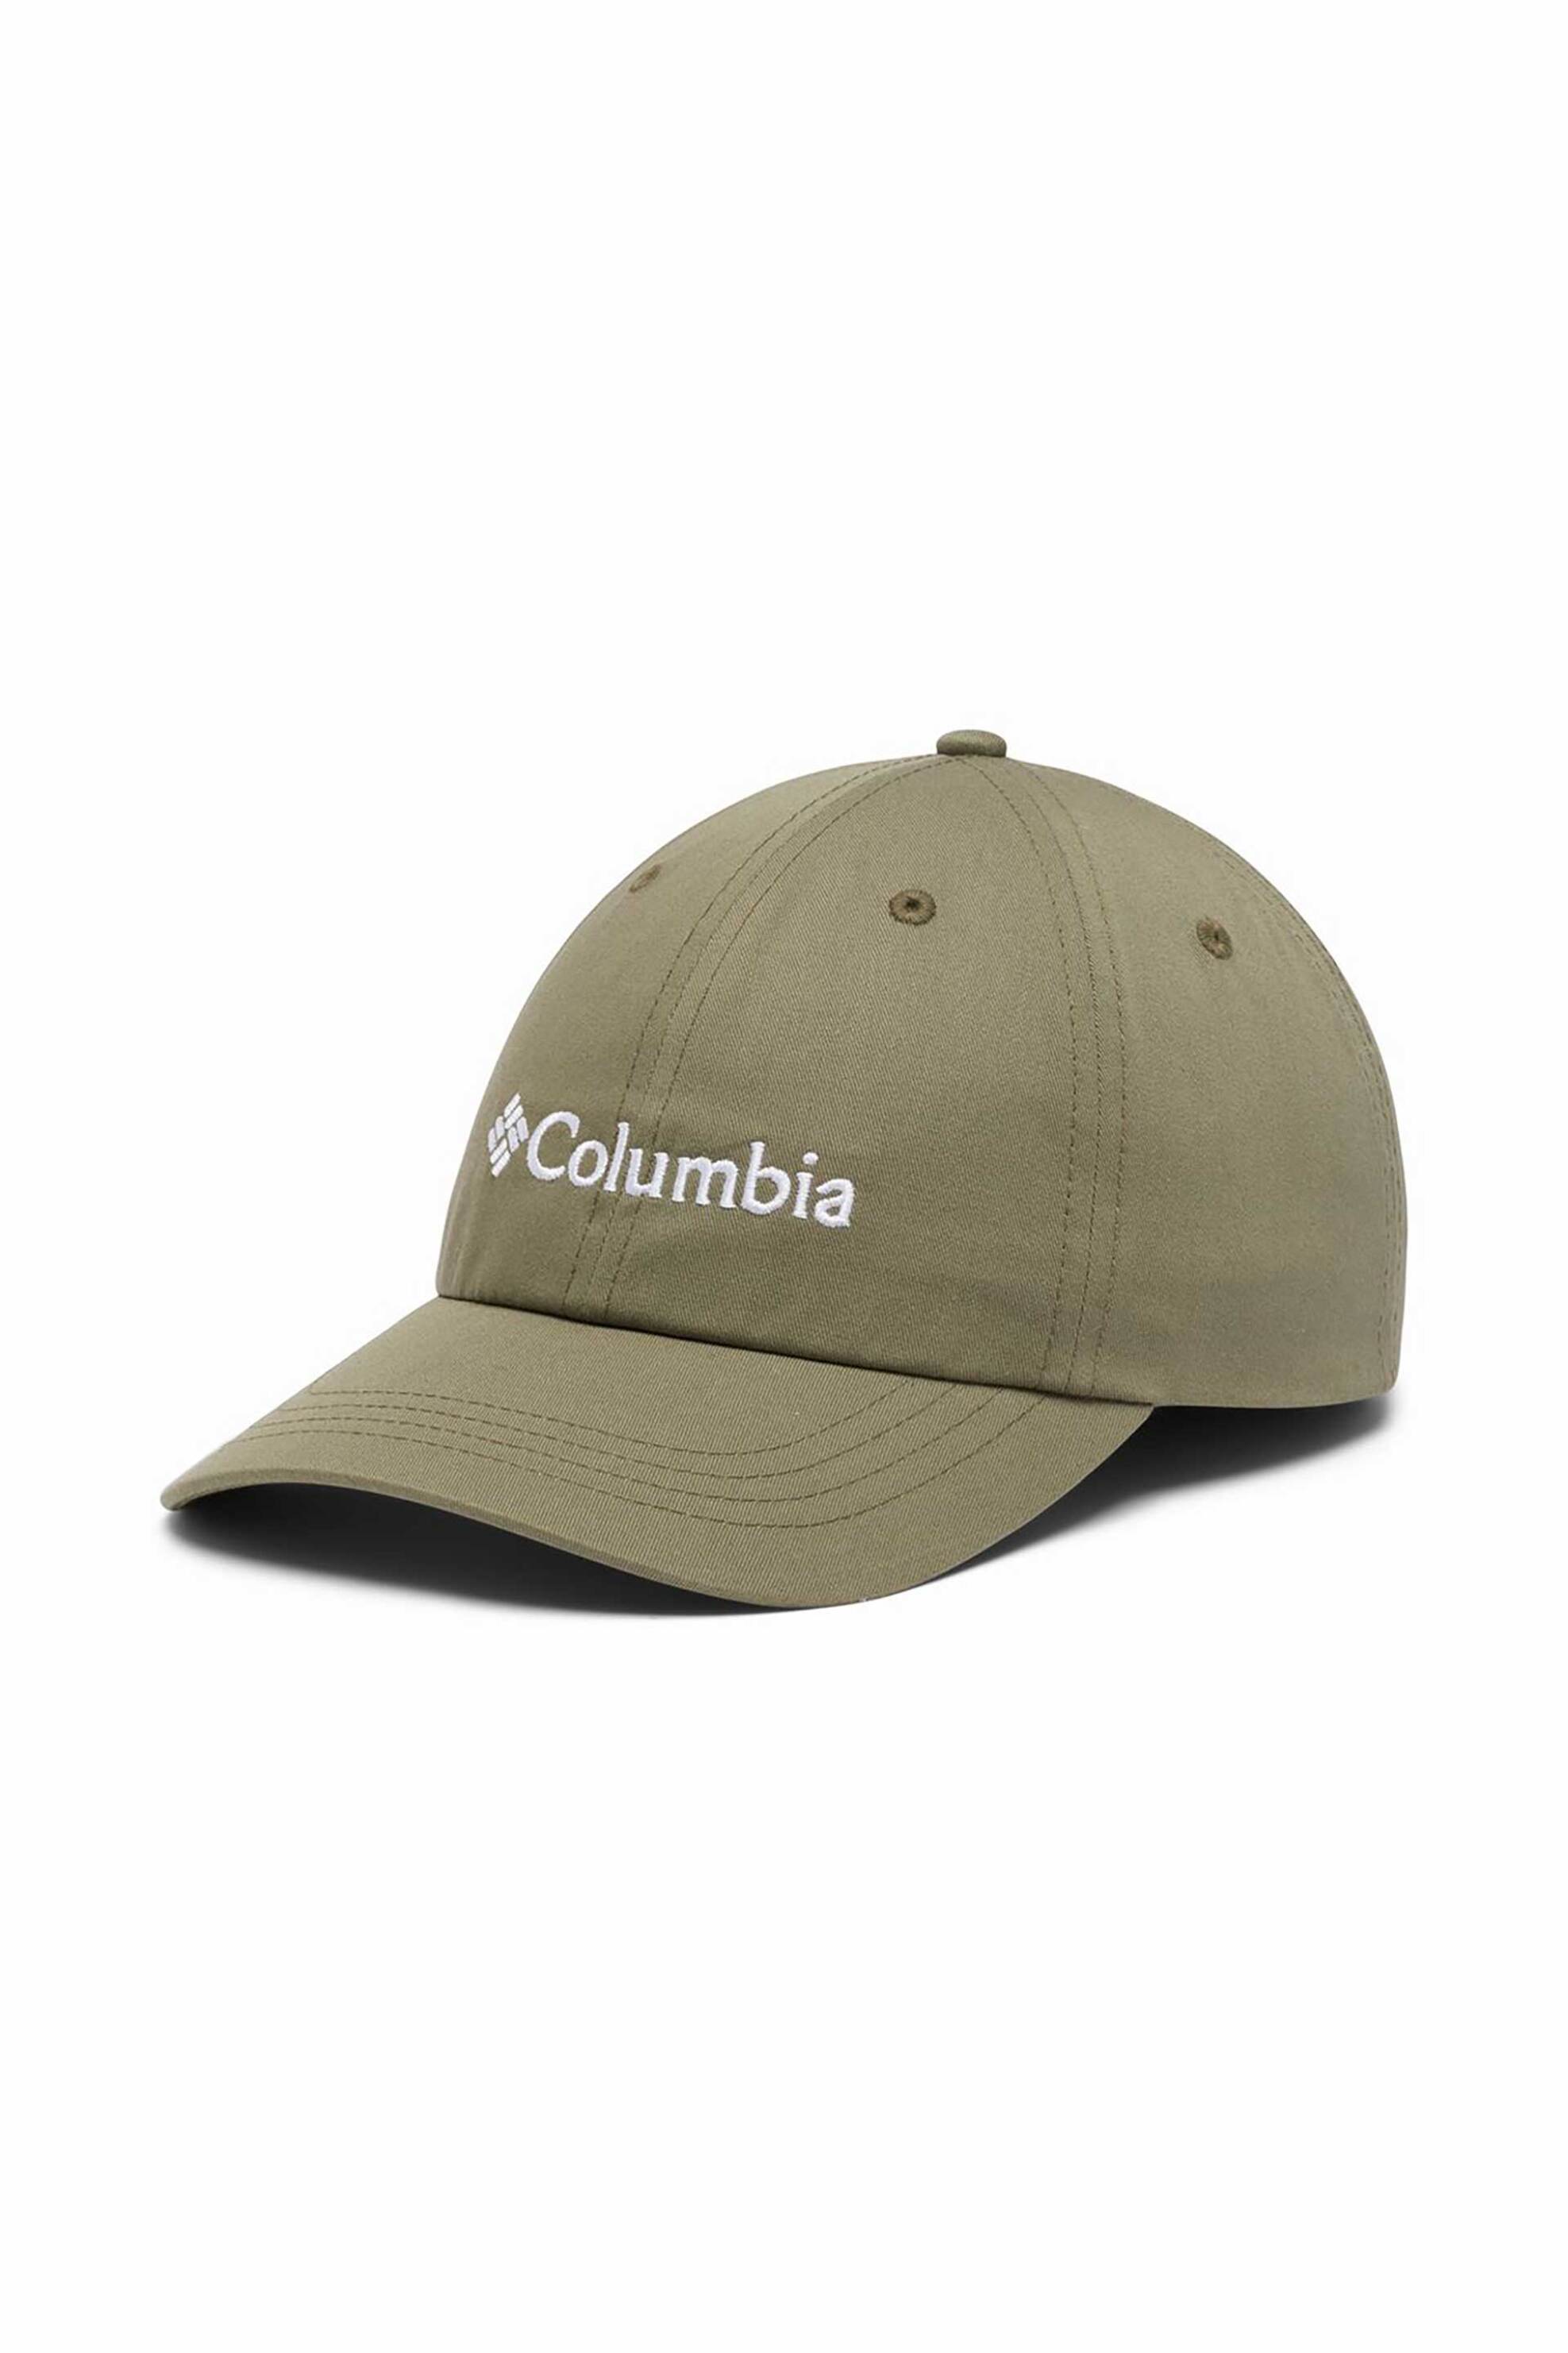 Ανδρική Μόδα > Ανδρικά Αξεσουάρ > Ανδρικά Καπέλα & Σκούφοι Columbia unisex καπέλο μονόχρωμο με κεντημένο λογότυπο "Roc™ II" - CU0019398TEM Χακί